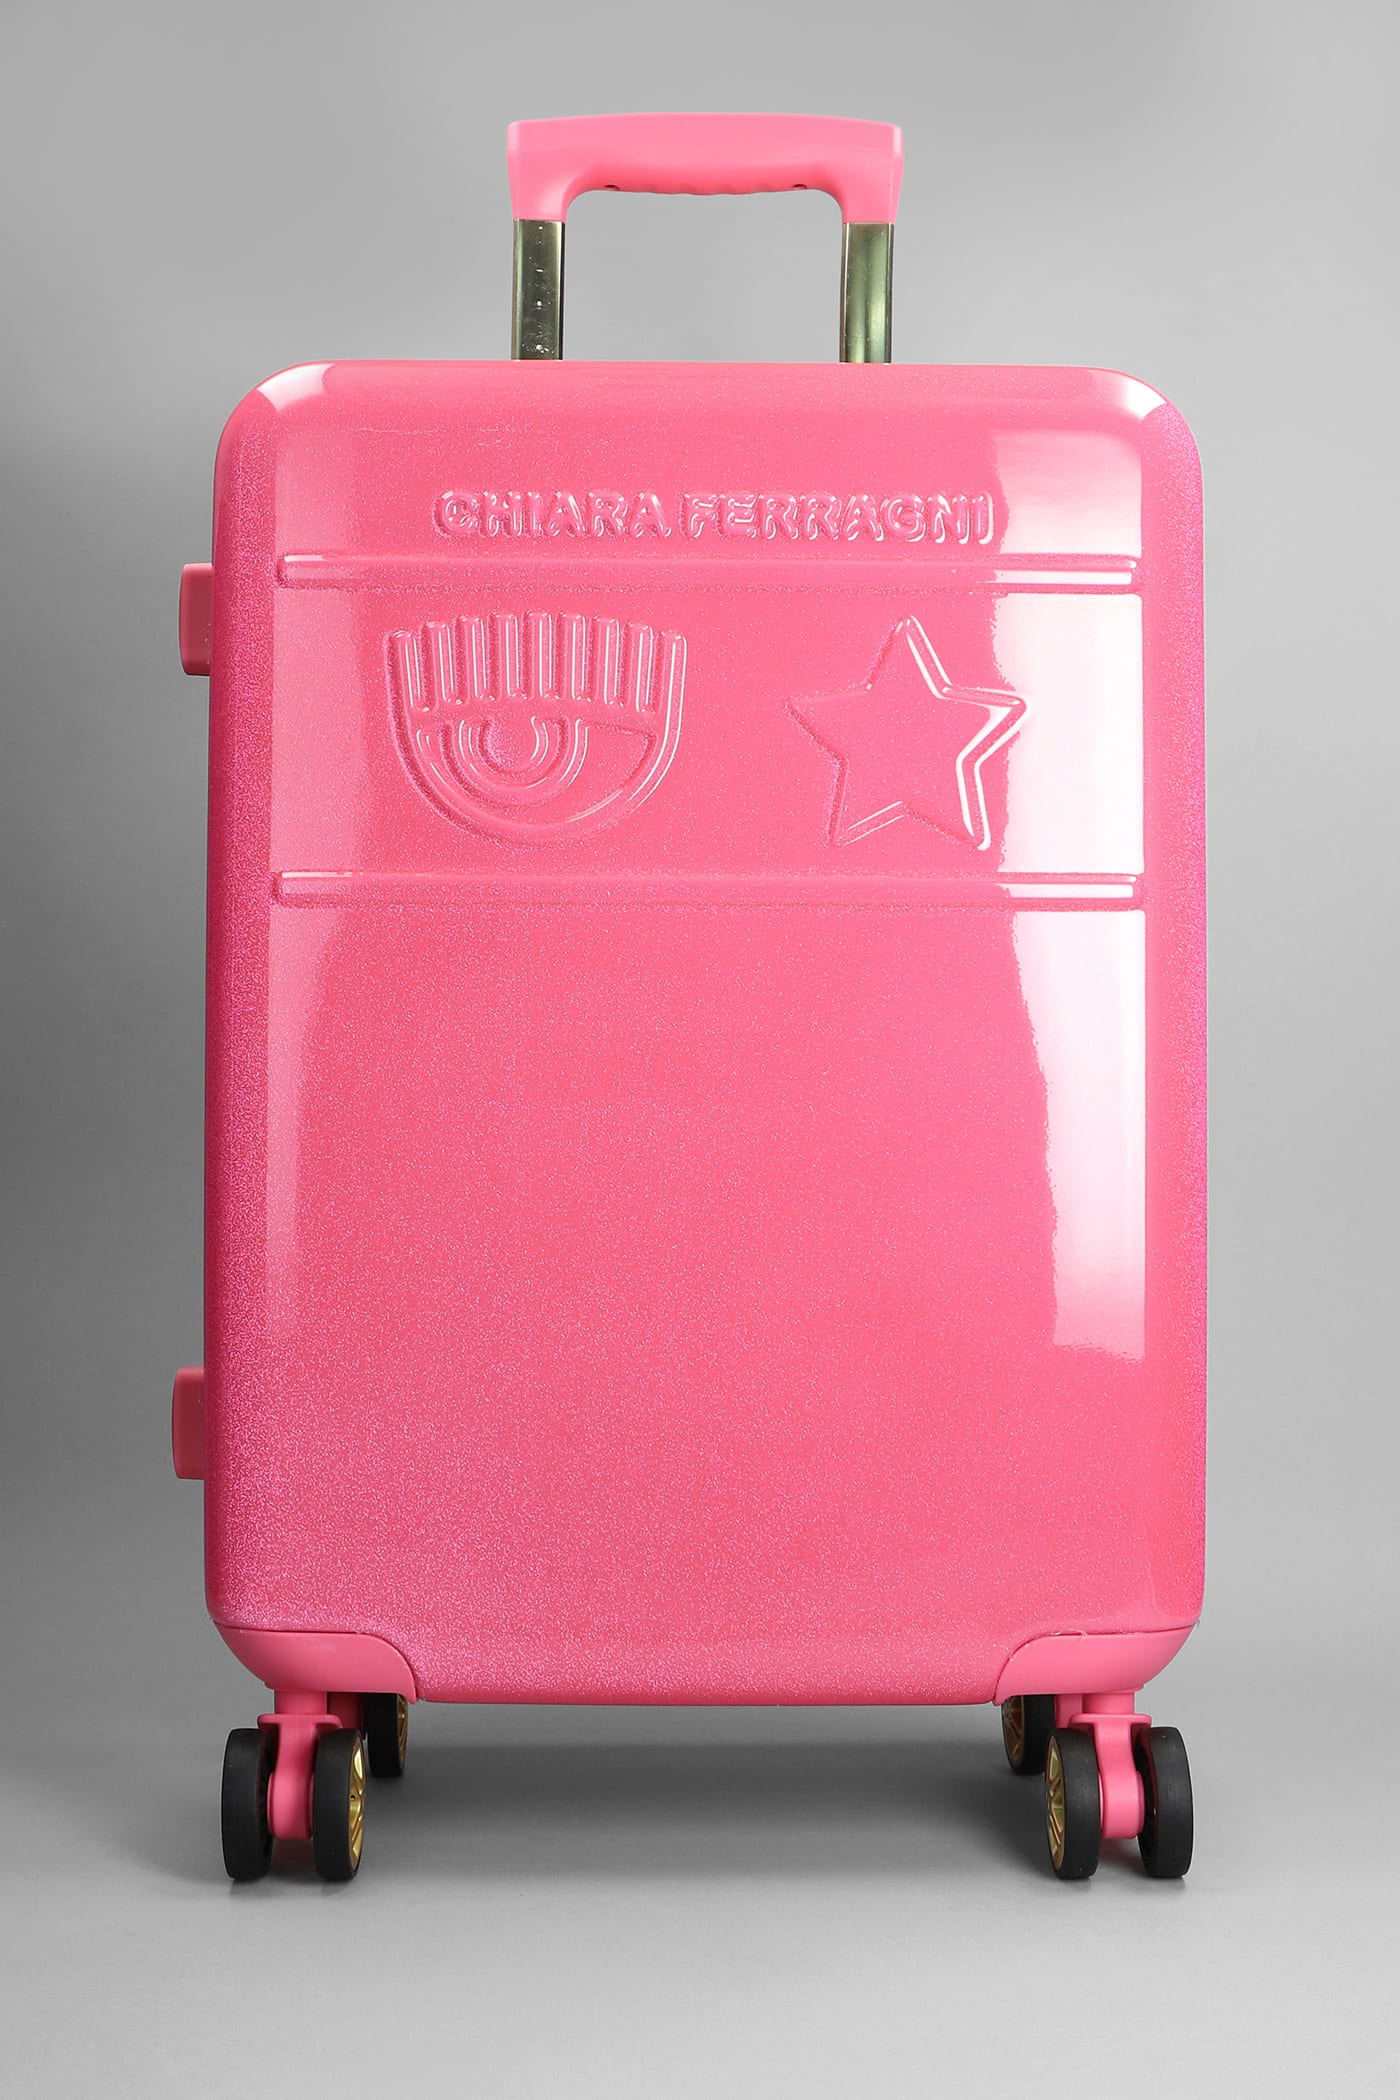 Chiara Ferragni Trolley In Rose-pink Acrylic